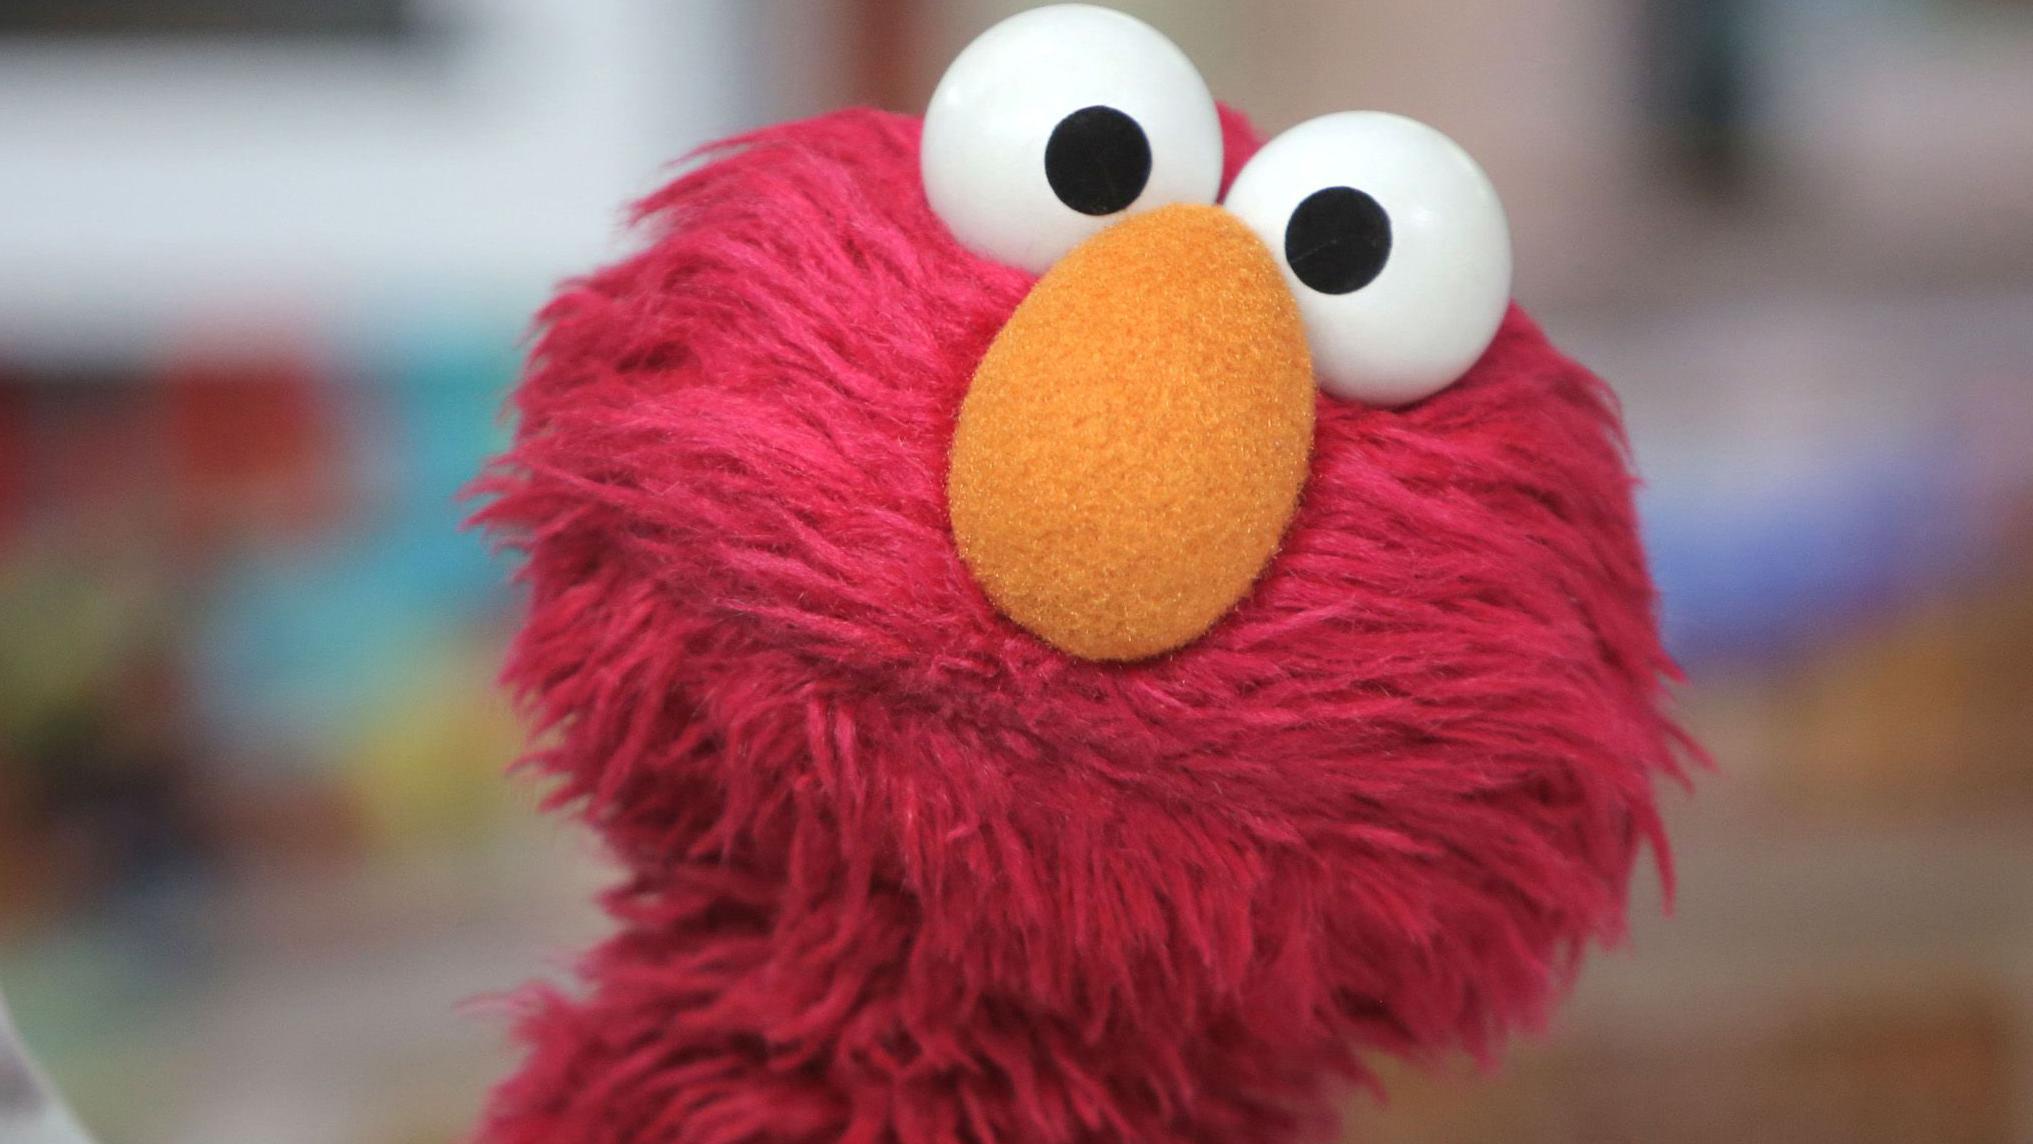 Después de que Elmo preguntara cómo le iba a todo el mundo con la X, los usuarios respondieron con una lluvia de traumas.

Getty Images